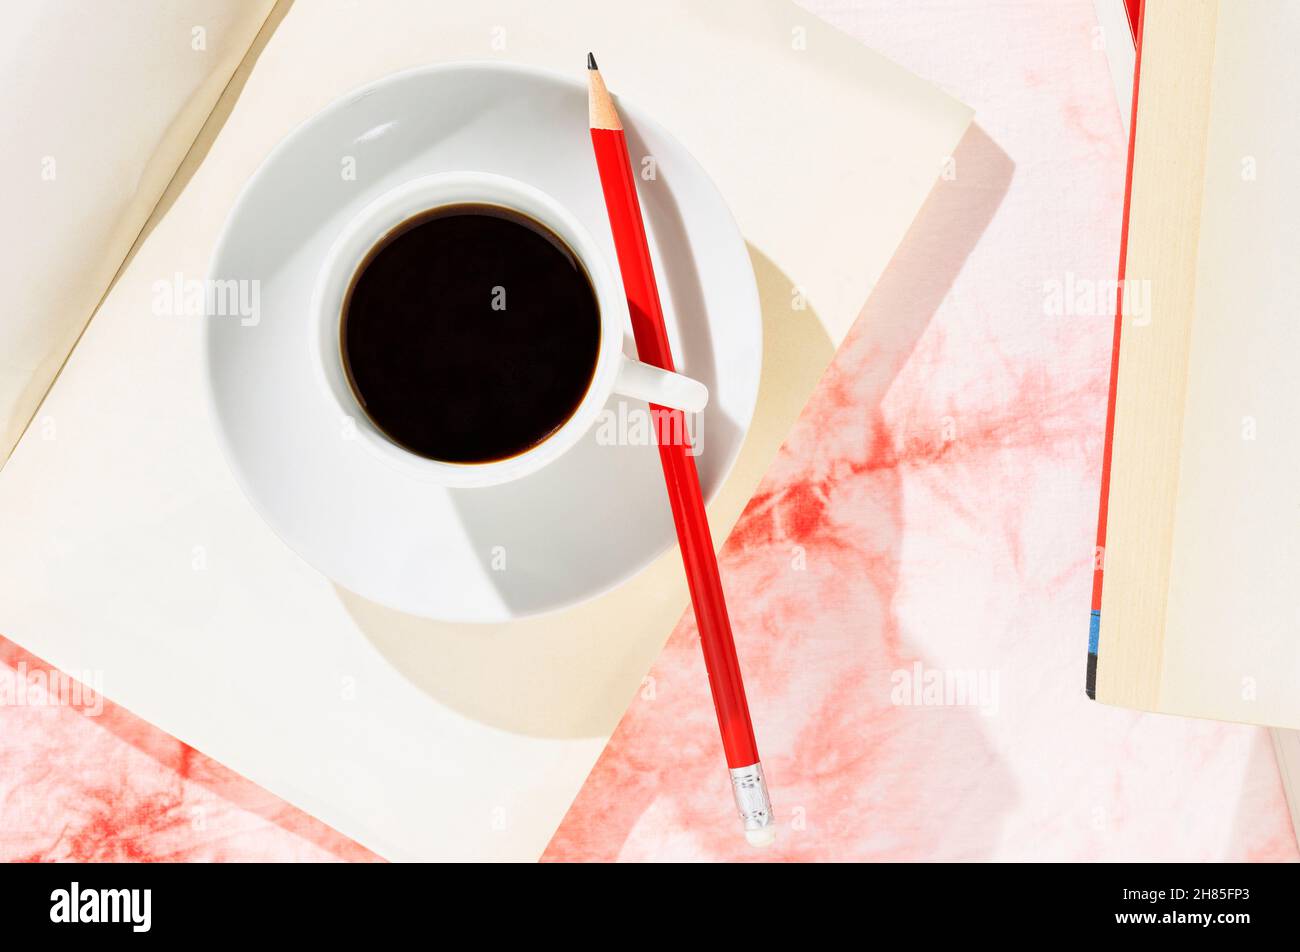 Tasse blanche de café avec crayon rouge sur livre ouvert, fond blanc et rouge Banque D'Images